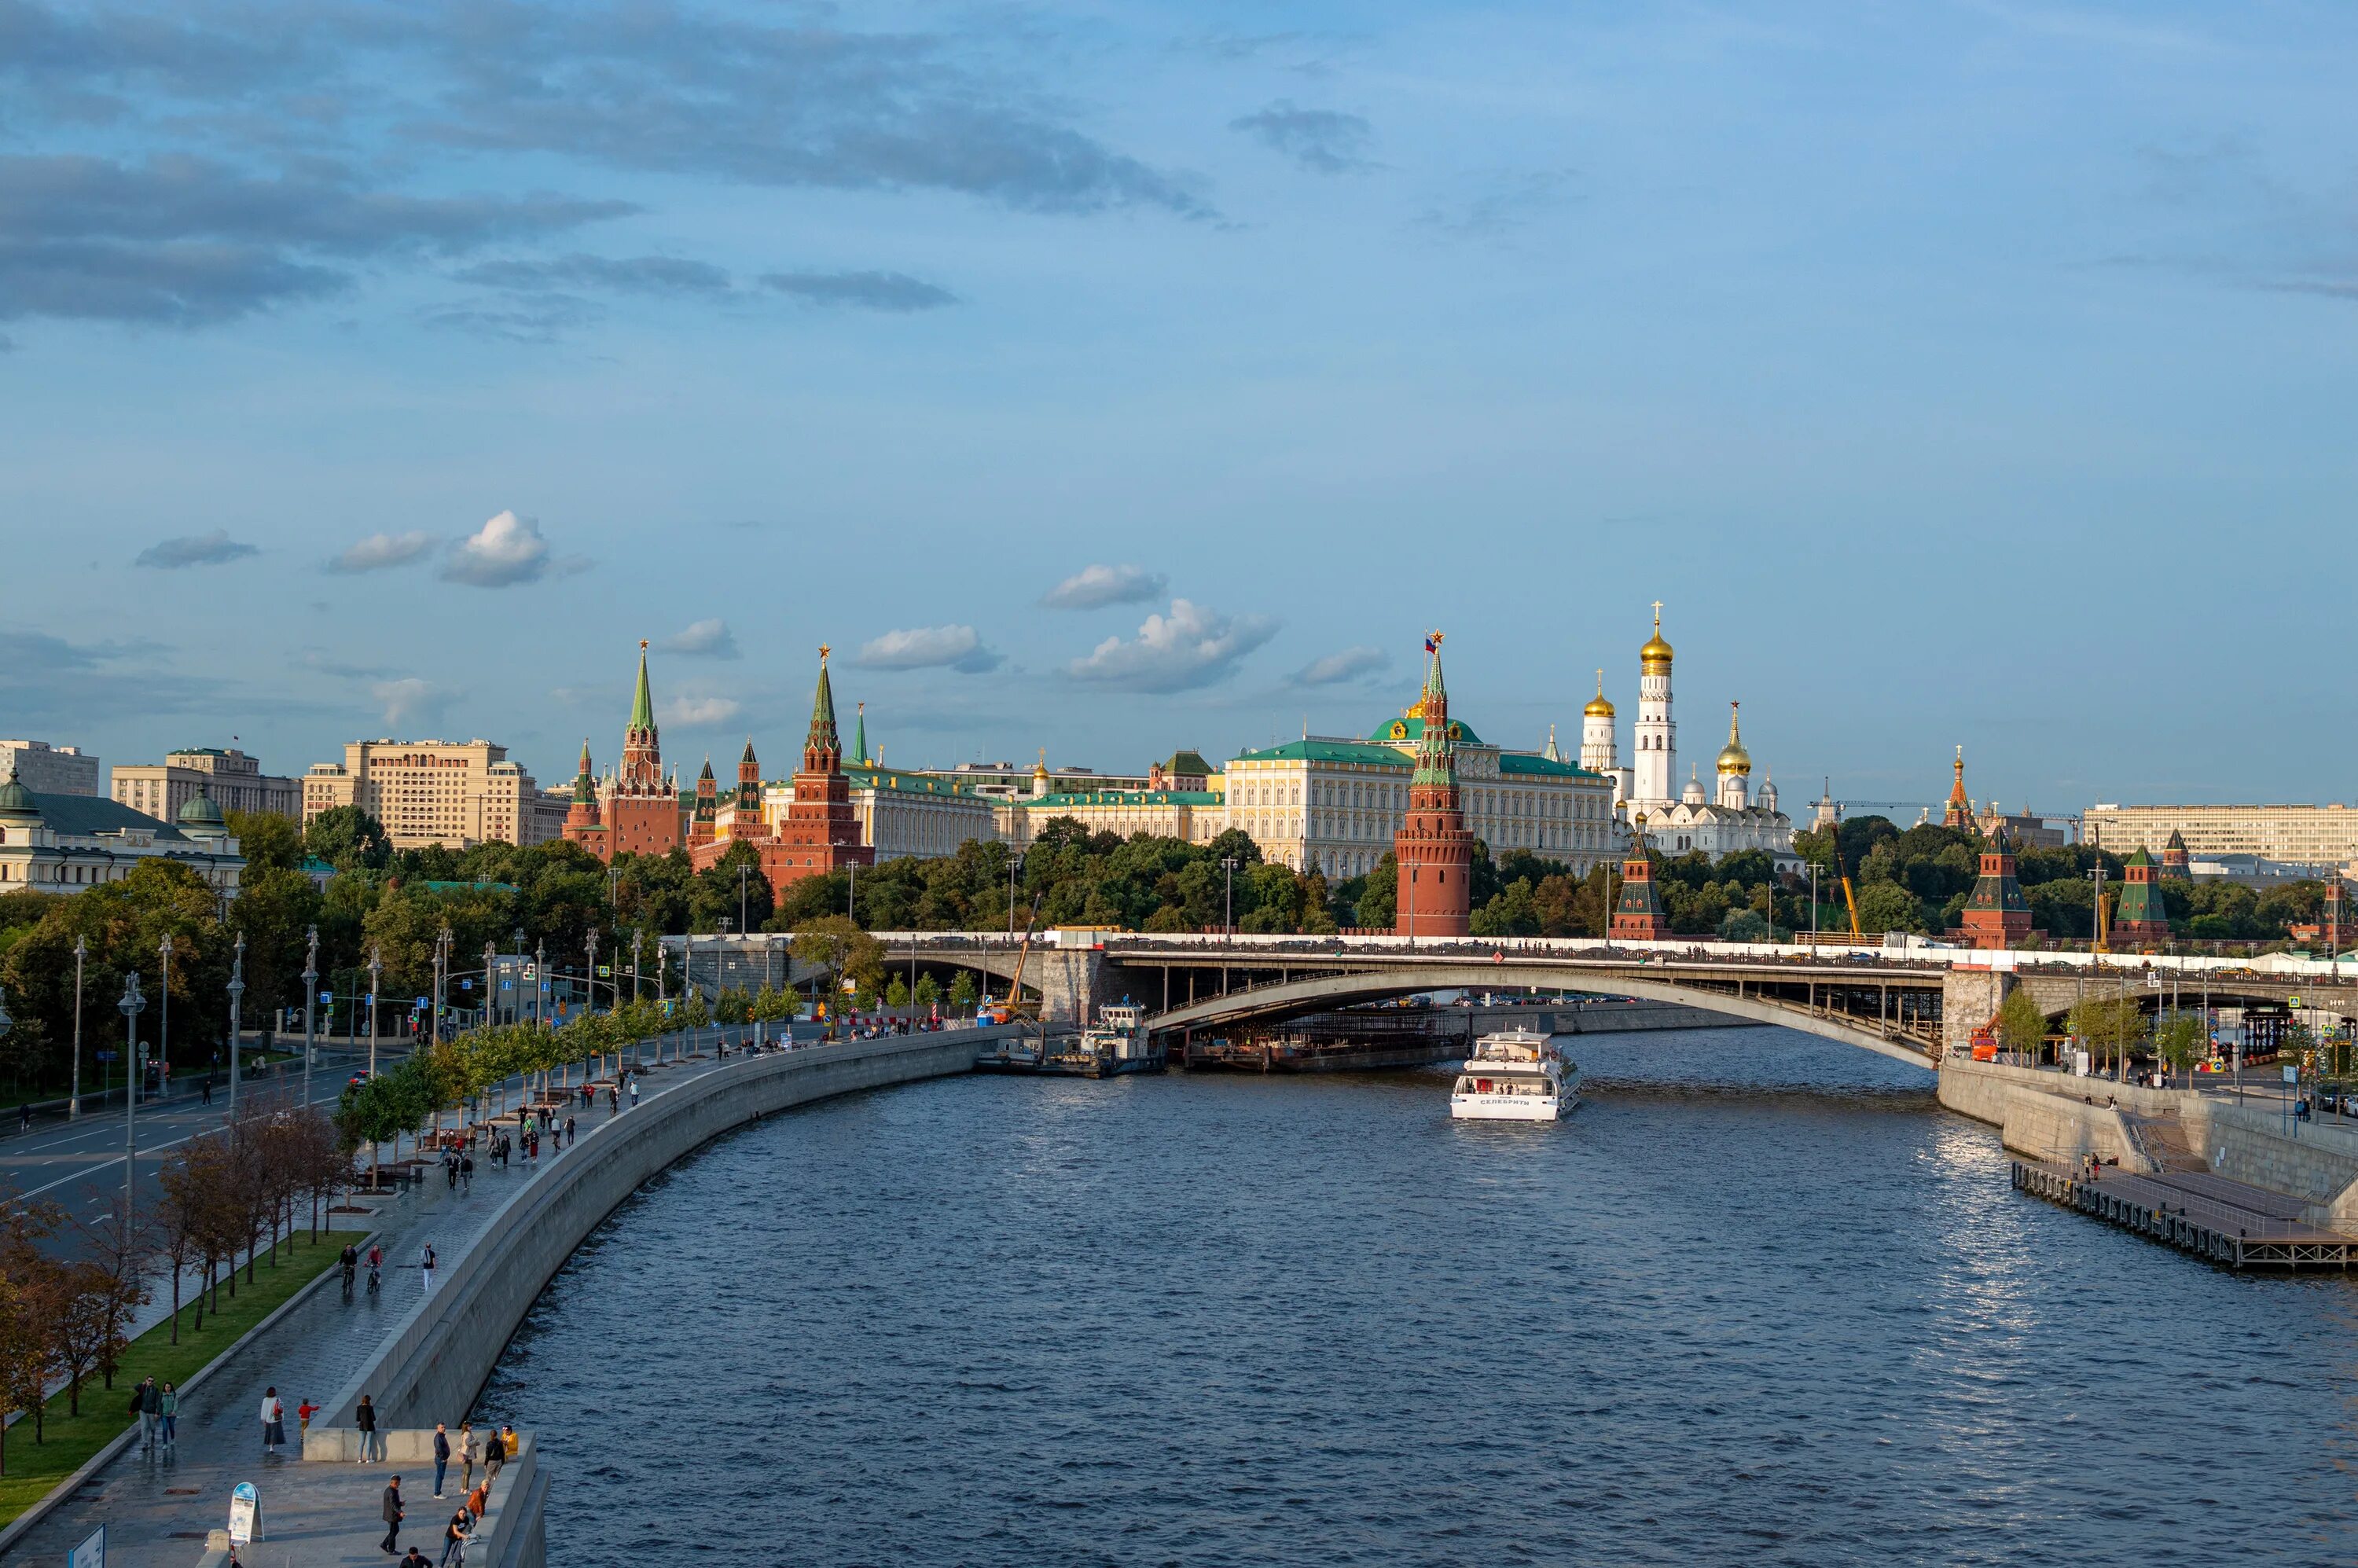 Страна меньше москвы. Реки Москвы. Москва Кремль Москва река. Мост на Москве реке у Кремля. Кремлевская набережная Москва.